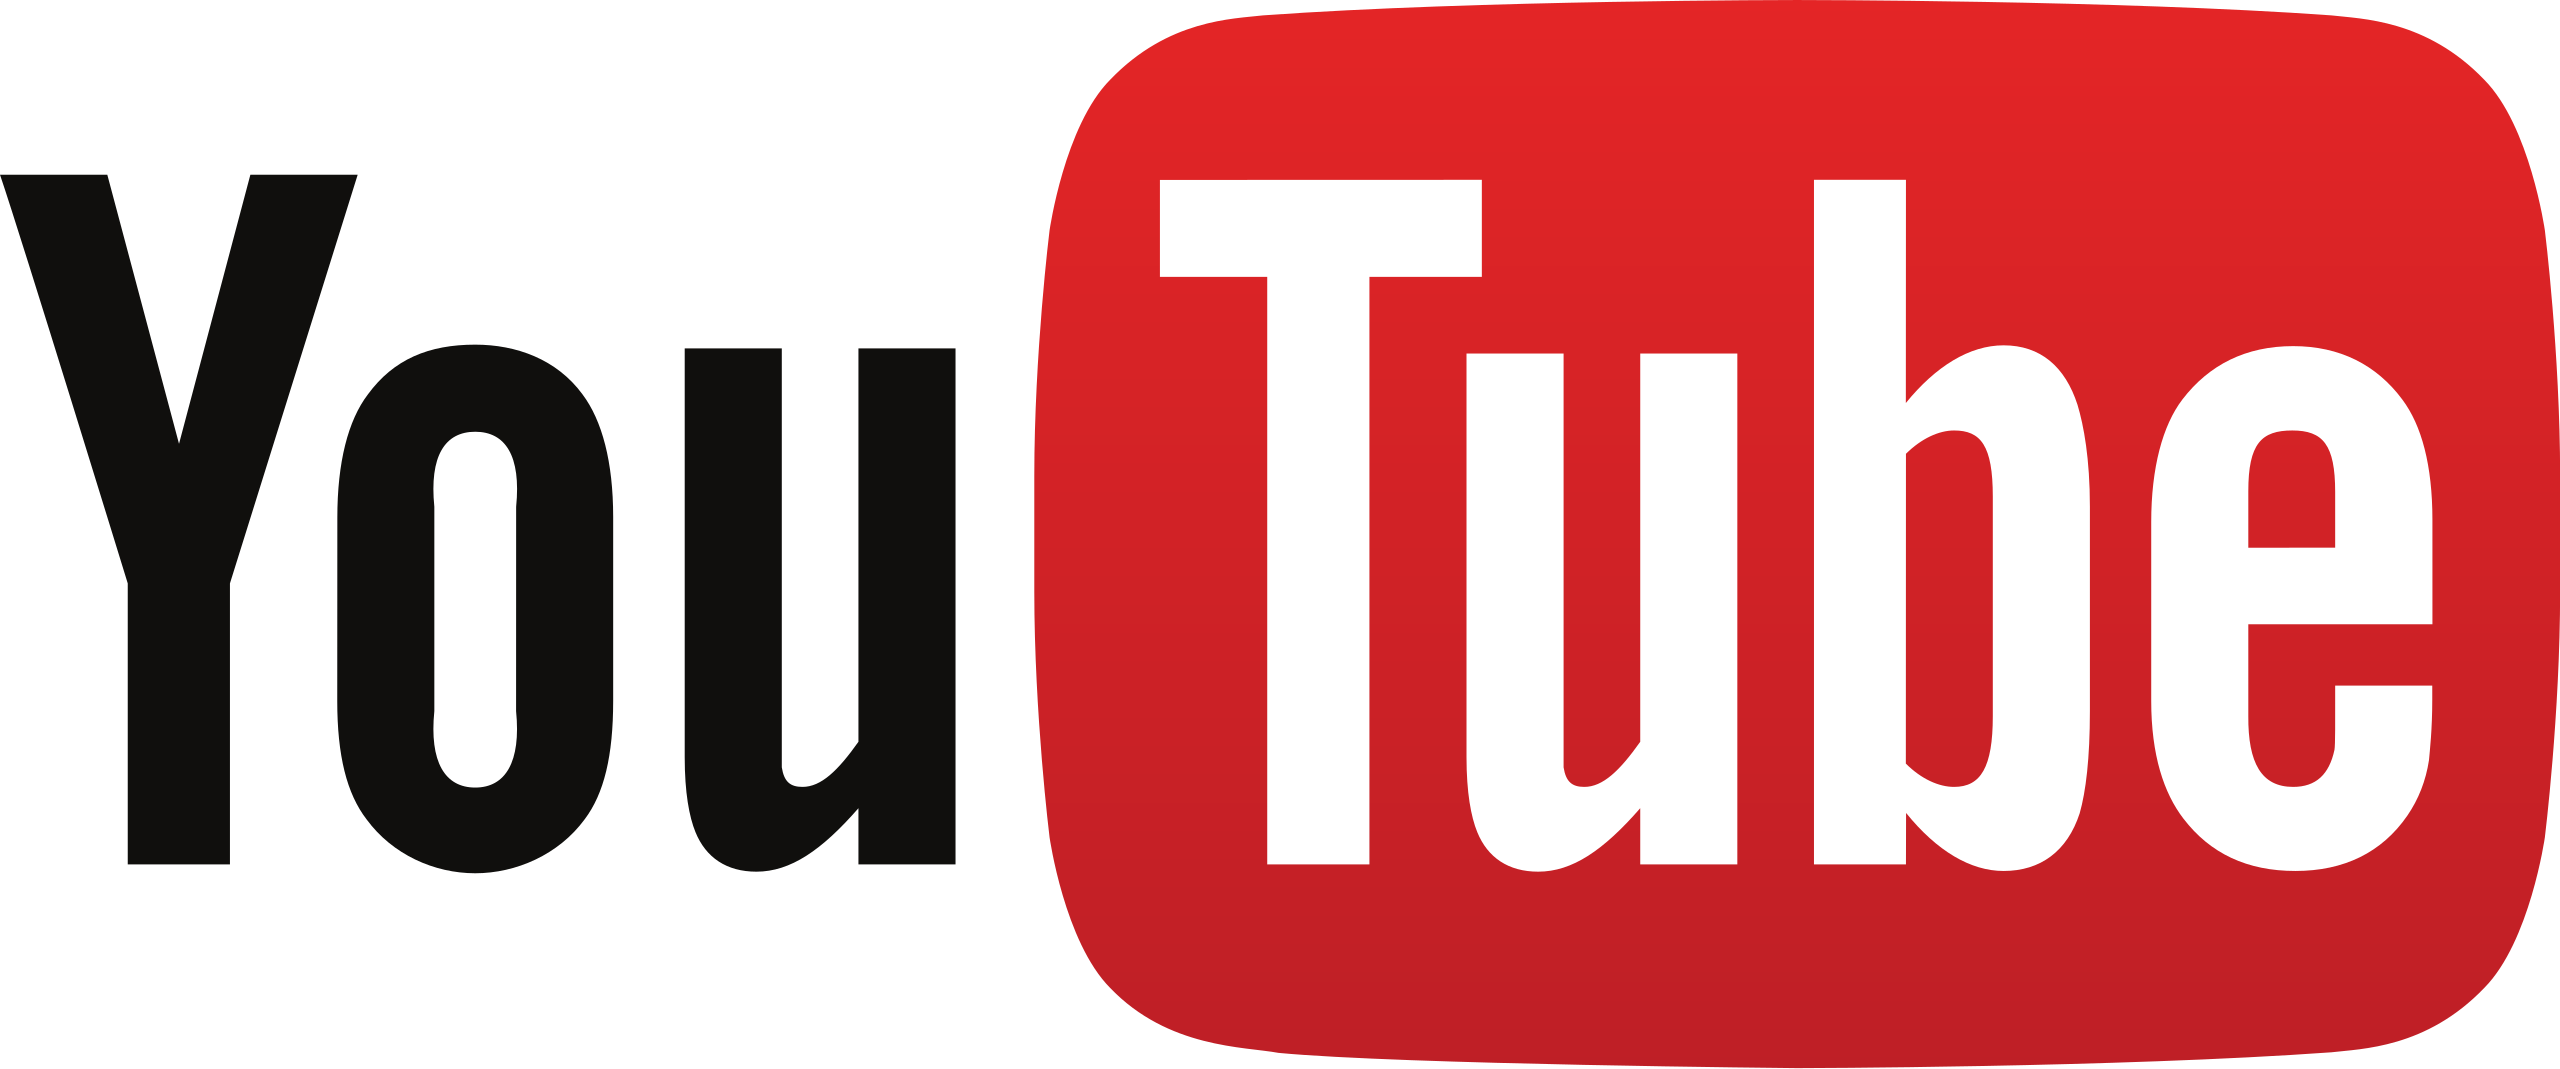 يوتيوب"  يحظر قناة شبكة "سكاي نيوز"